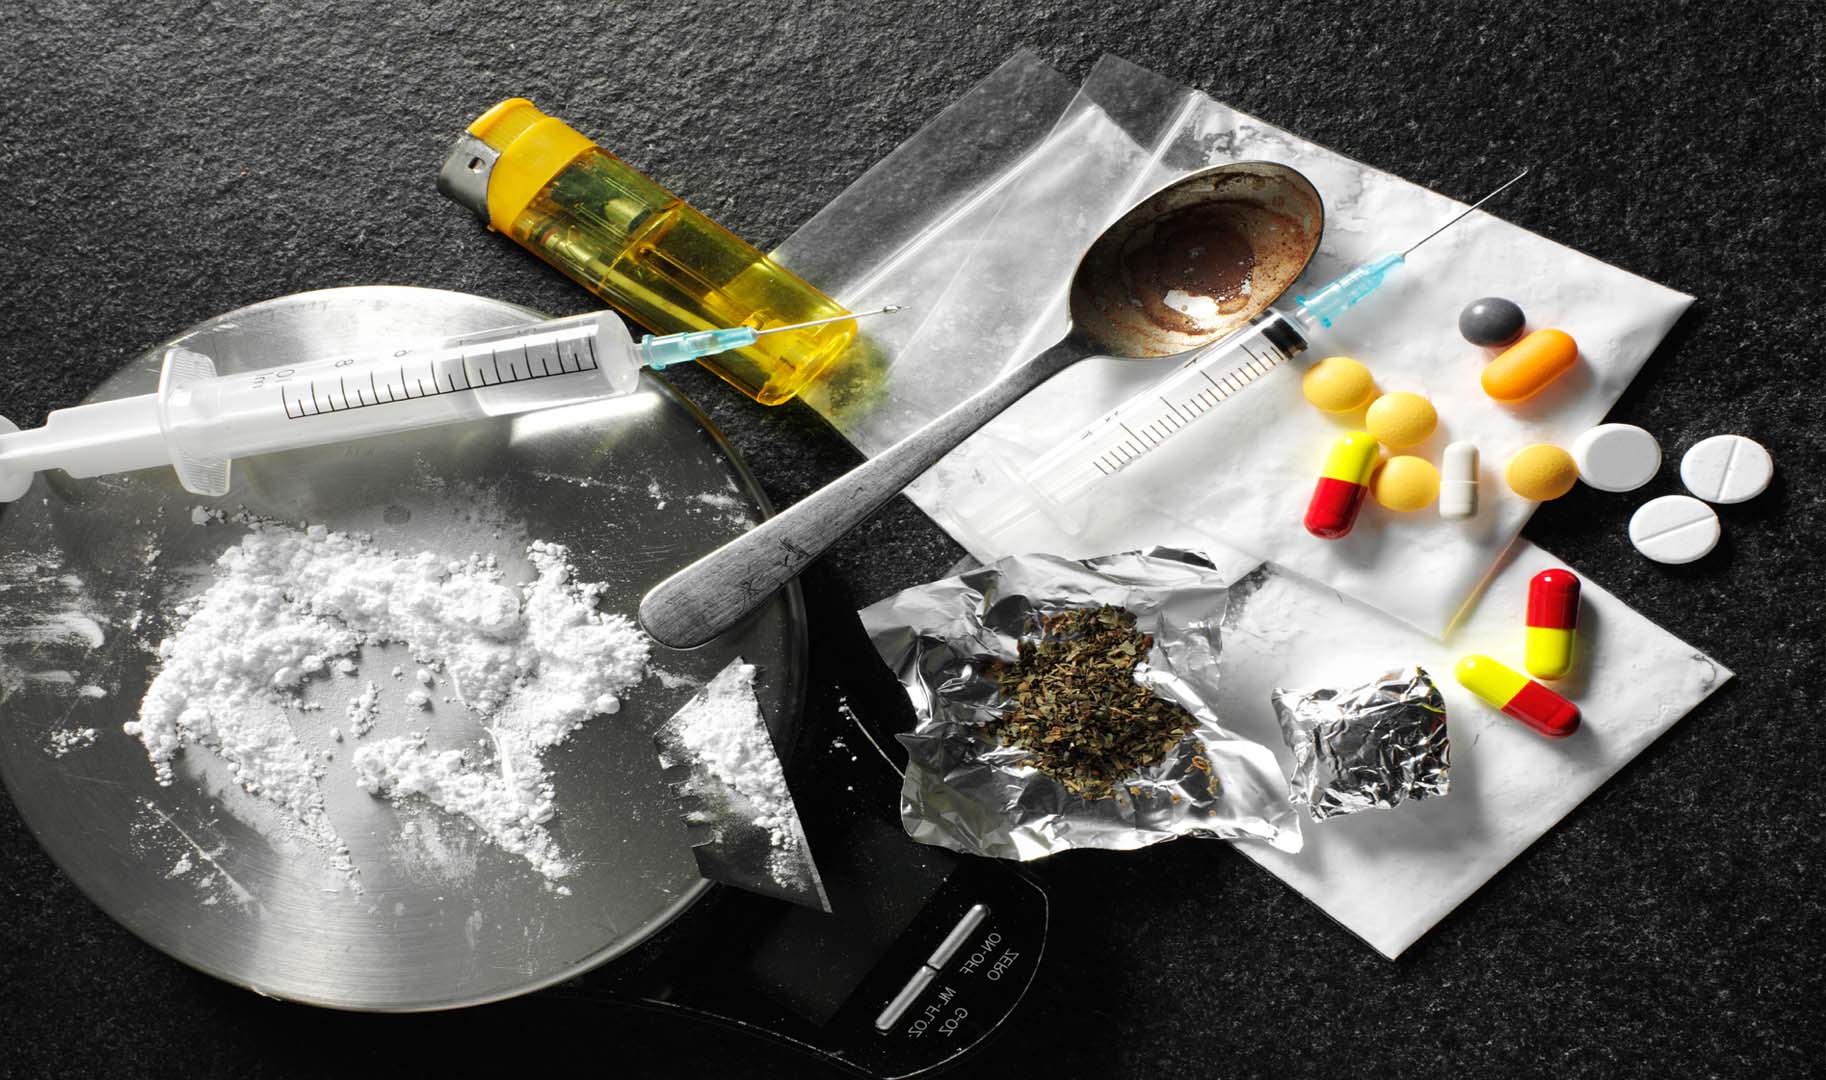 Drugs наркотики классный час начальные классы о наркотиках